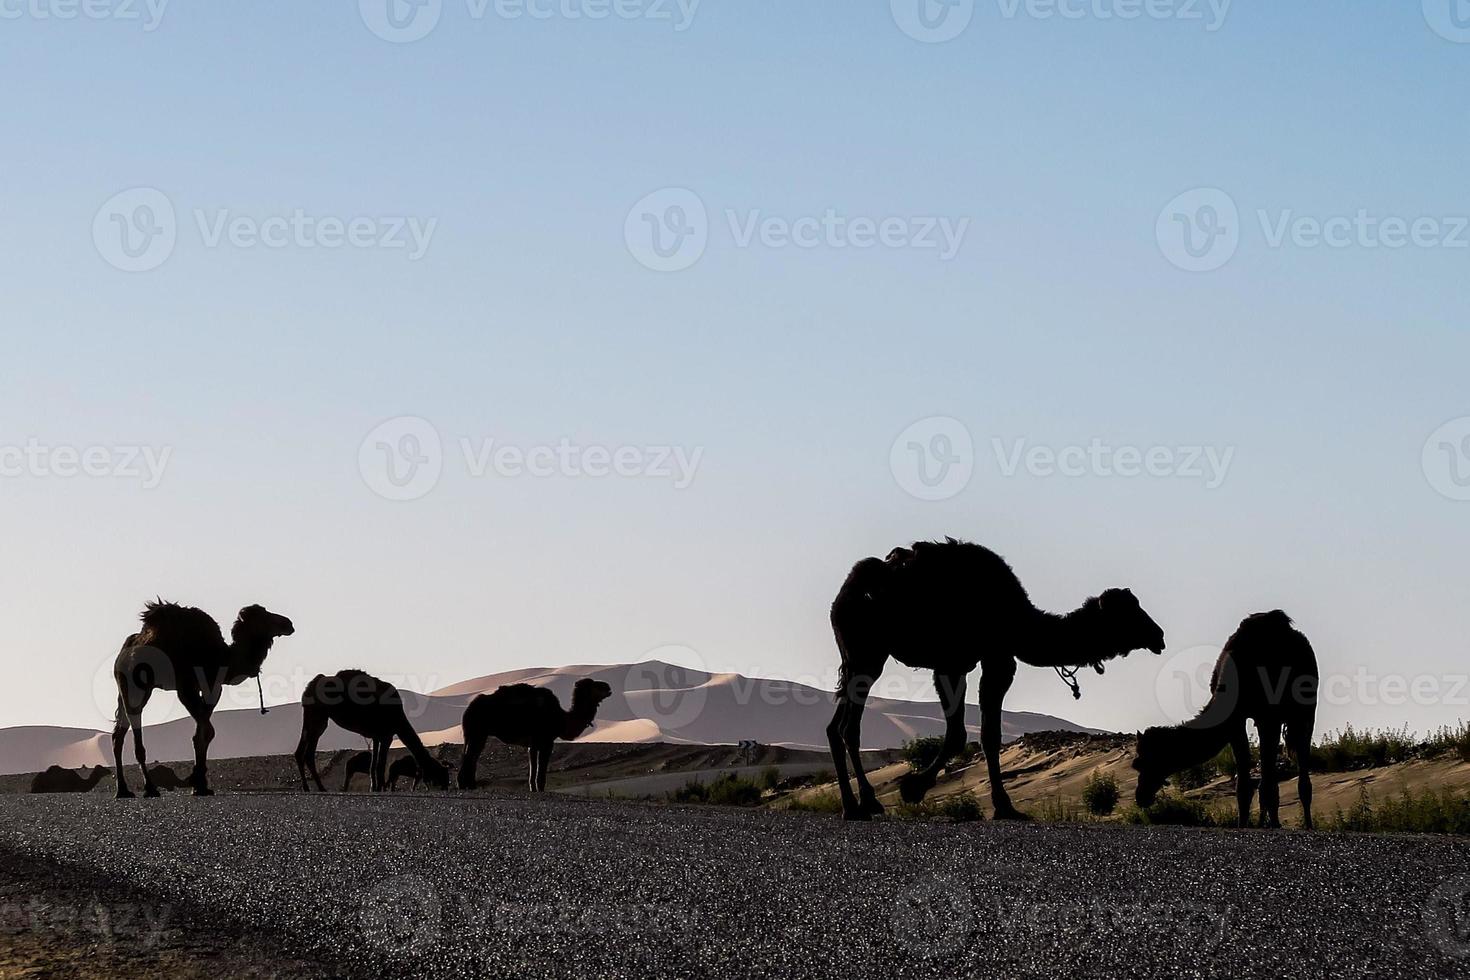 kamelen in marokko foto